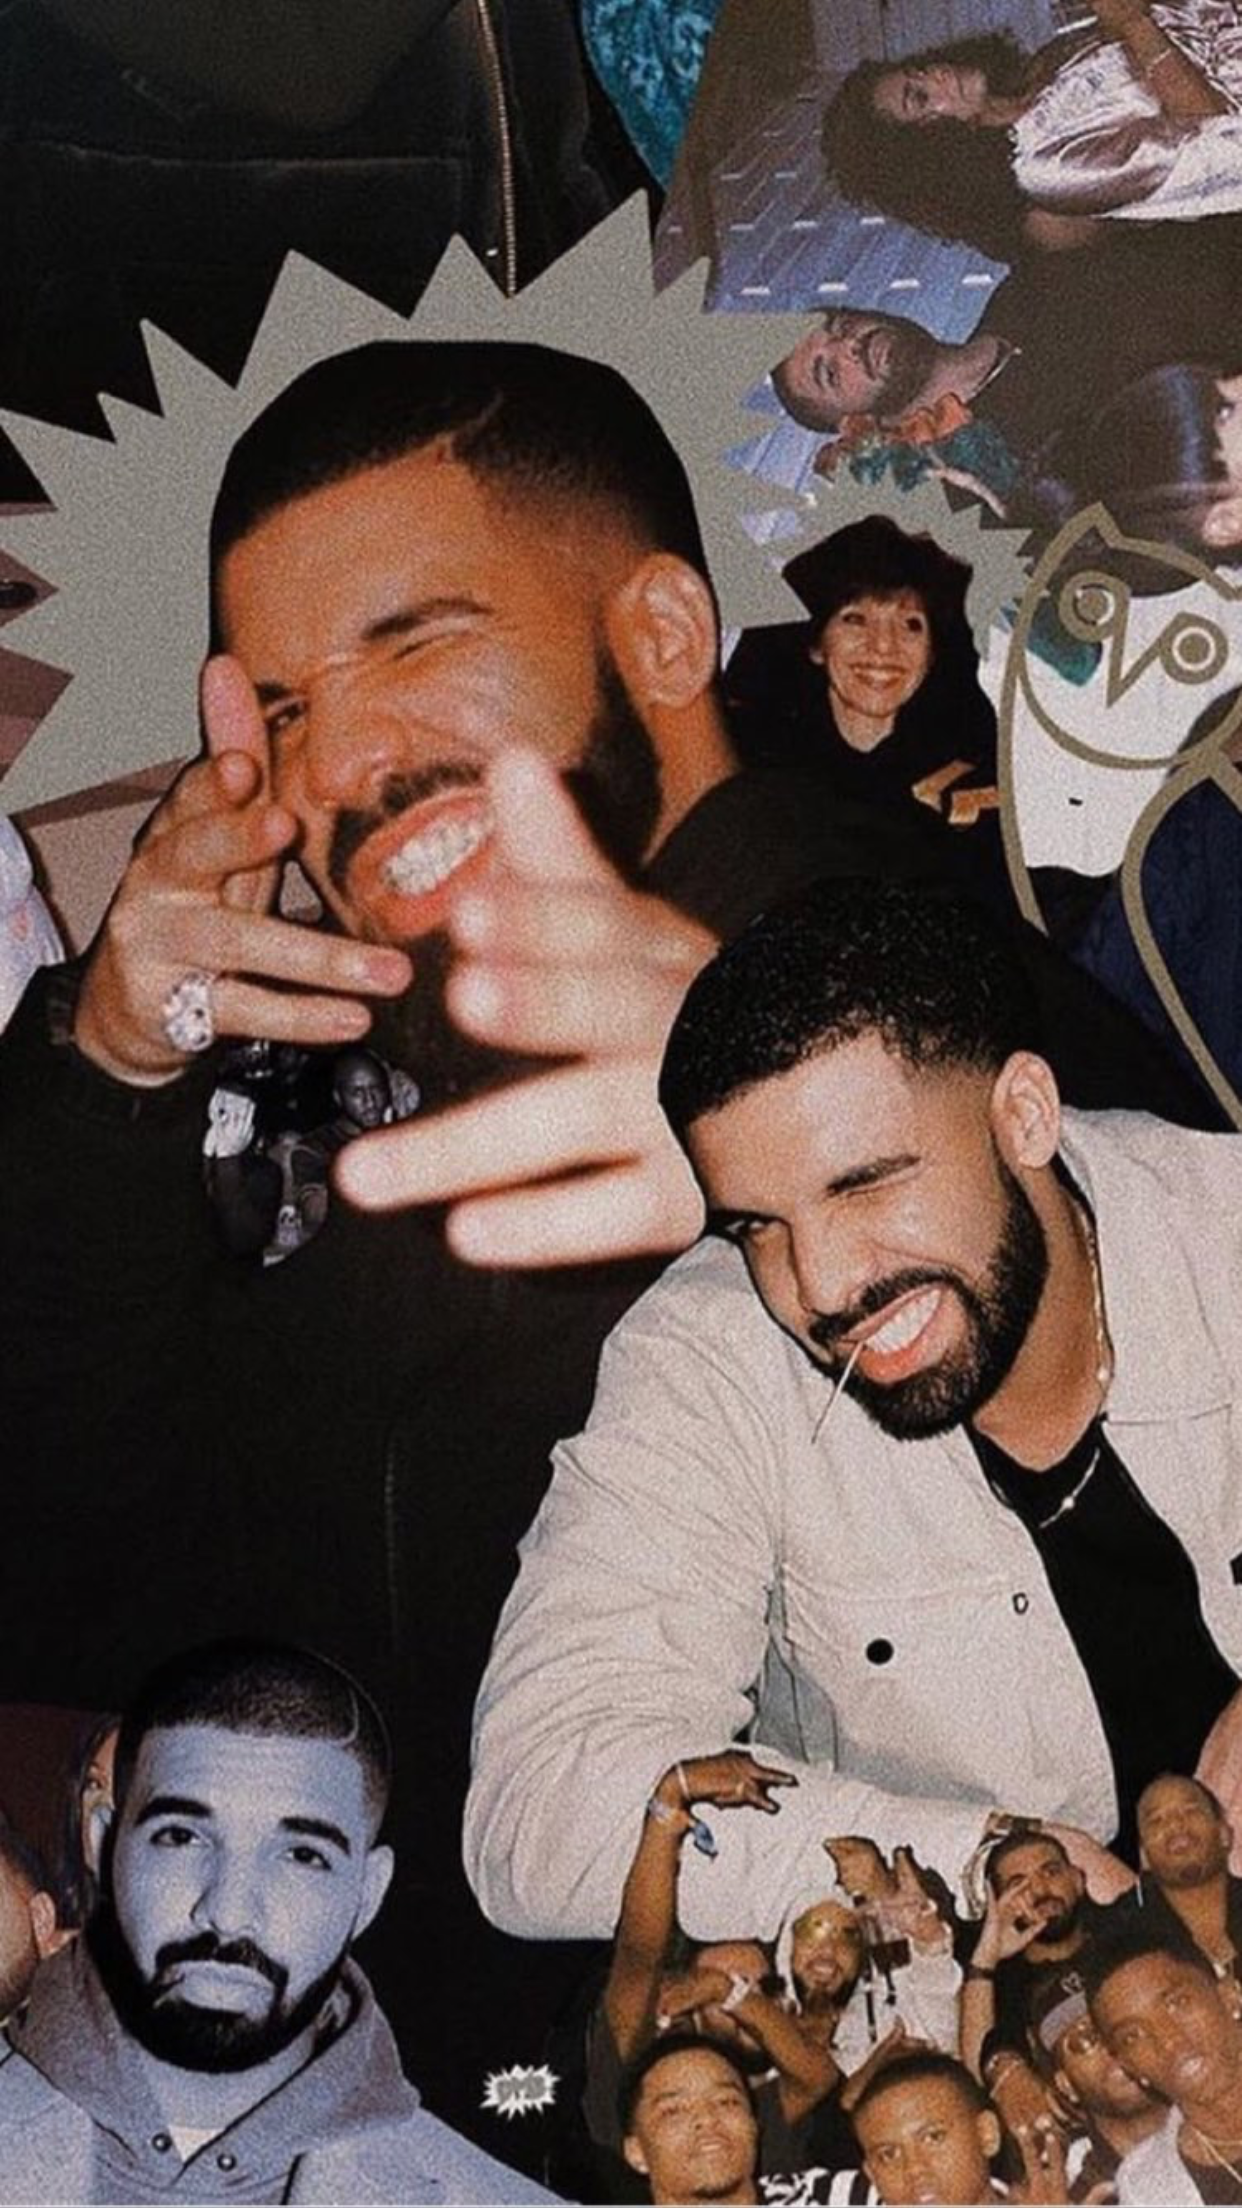 Drake Tumblr Wallpapers